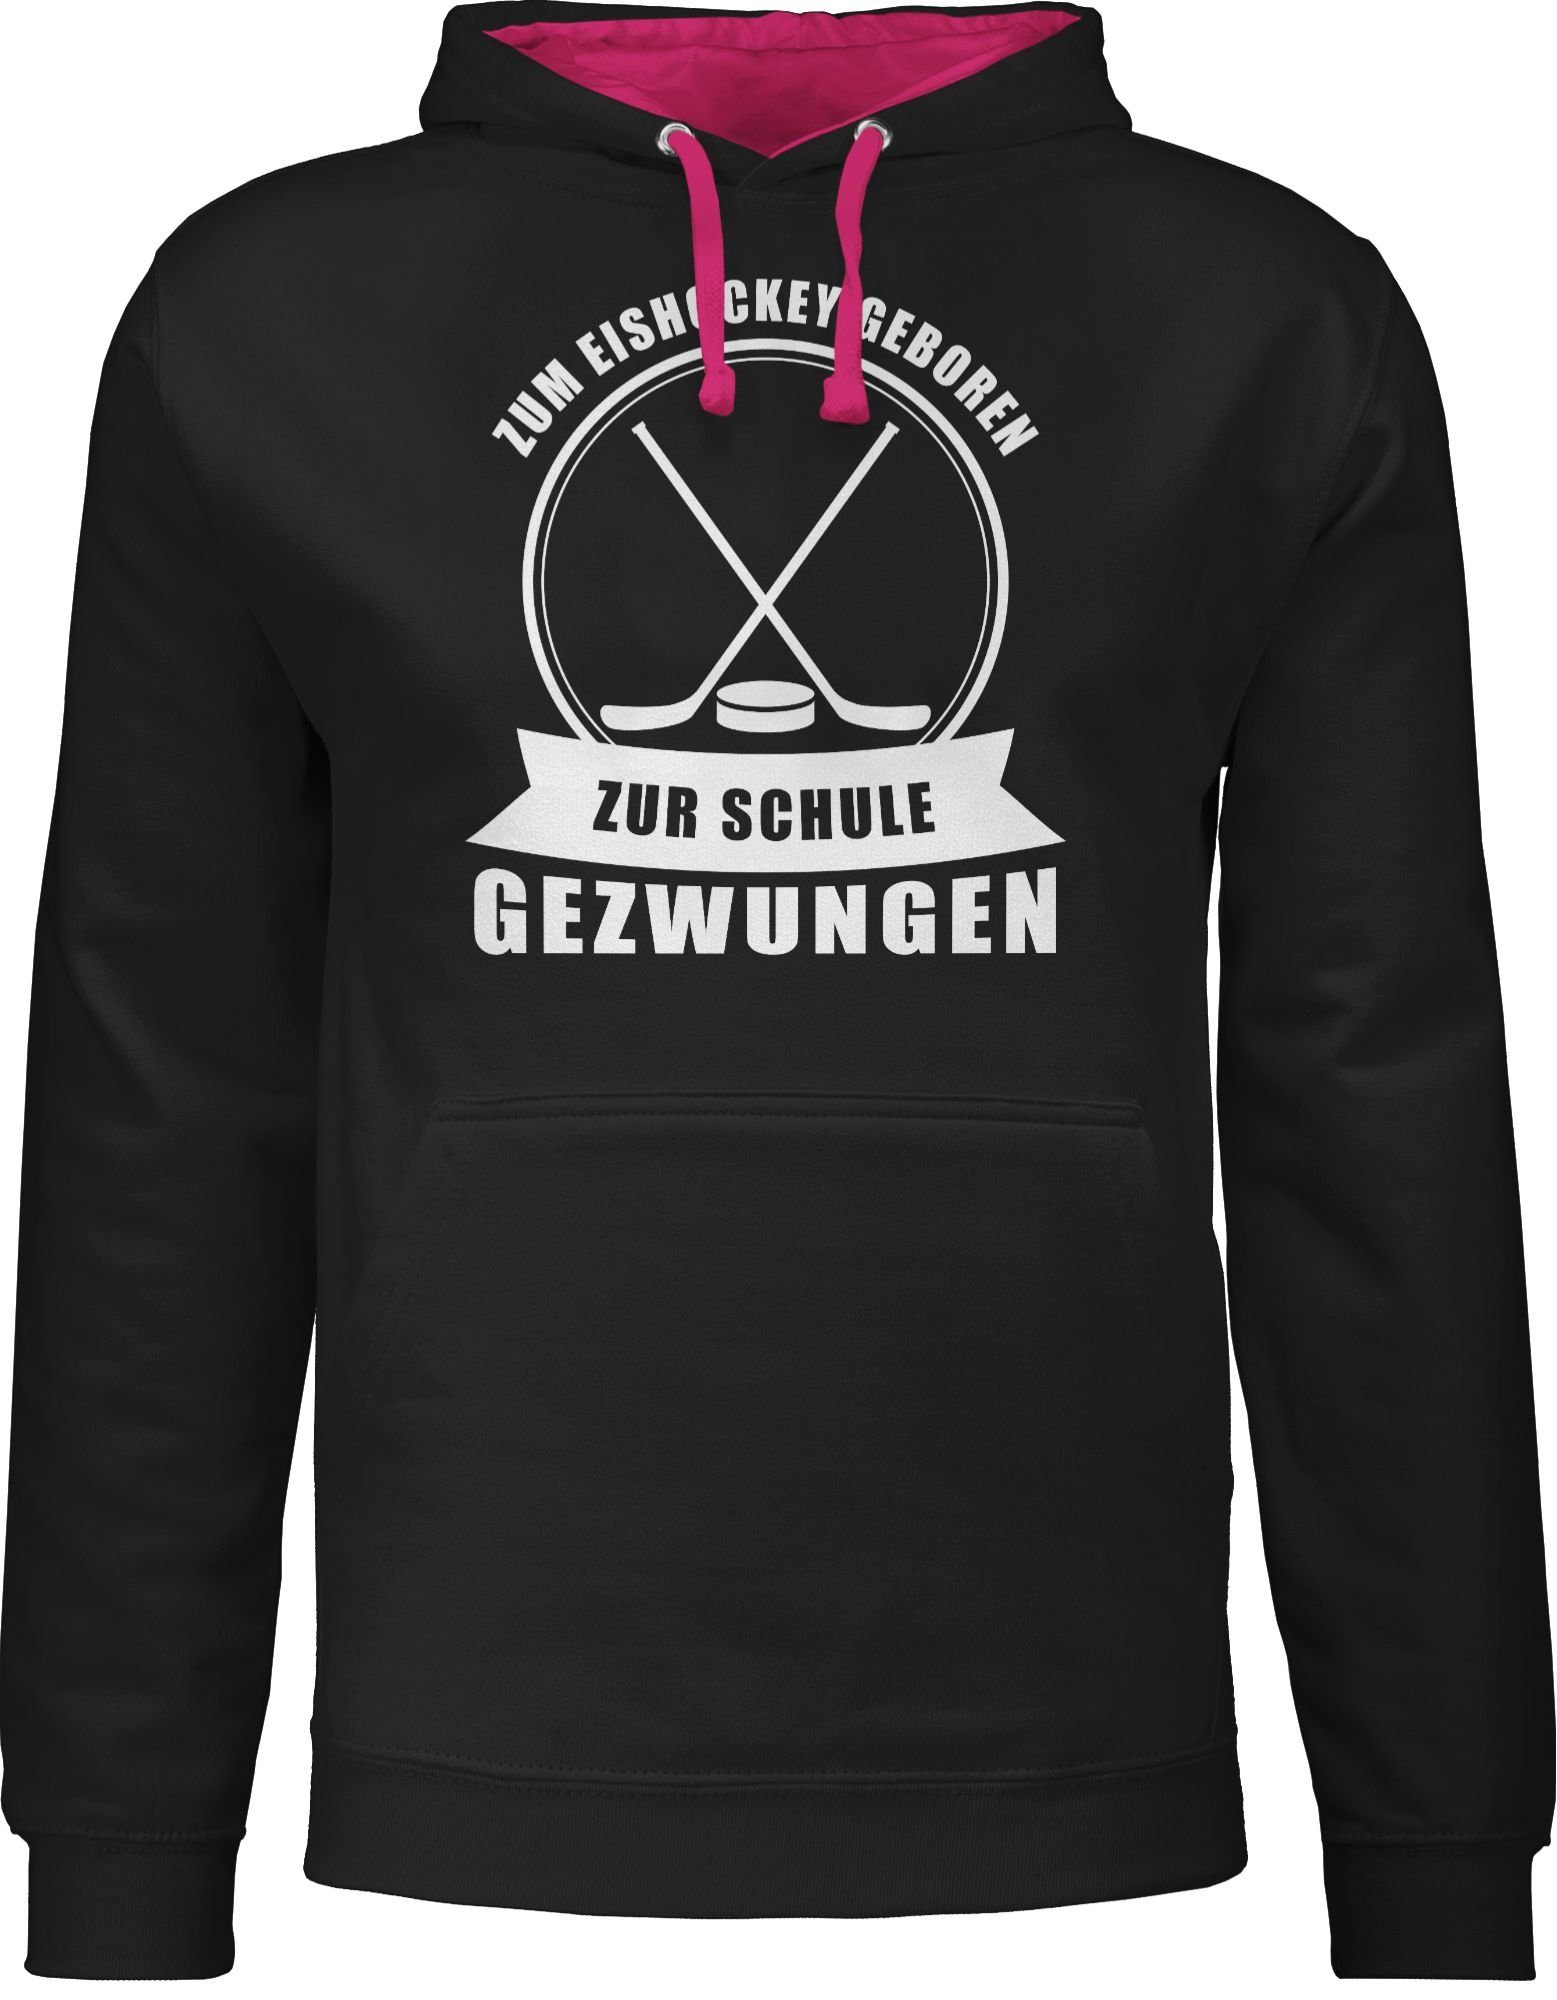 Damen Pullover Shirtracer Hoodie Zum Eishockey geboren. Zur Schule gezwungen - Eishockey Trikot Ersatz - Unisex Damen & Herren K